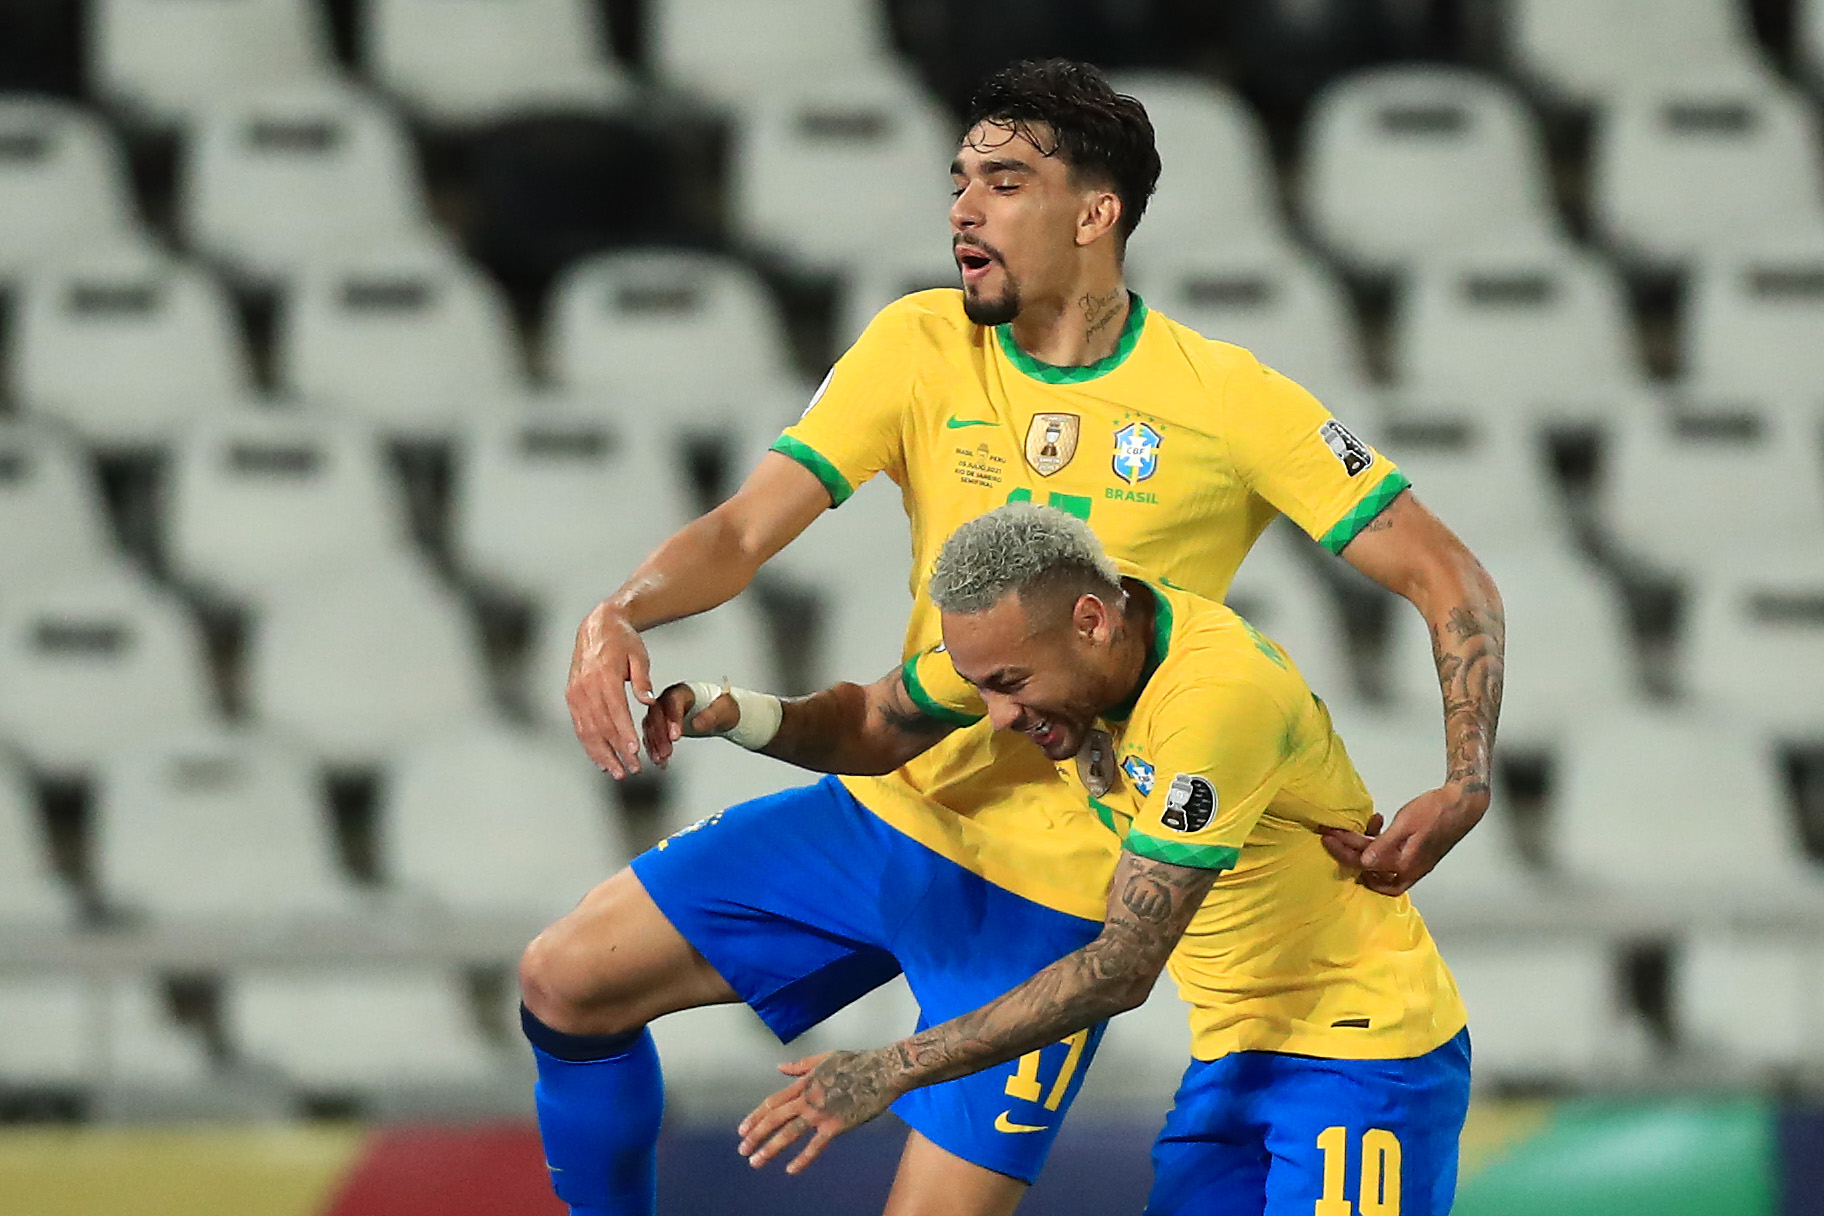 วิดีโอ: ‘คนดี’ – Lucas Paqueta ปกป้อง Neymar ท่ามกลางการวิจารณ์